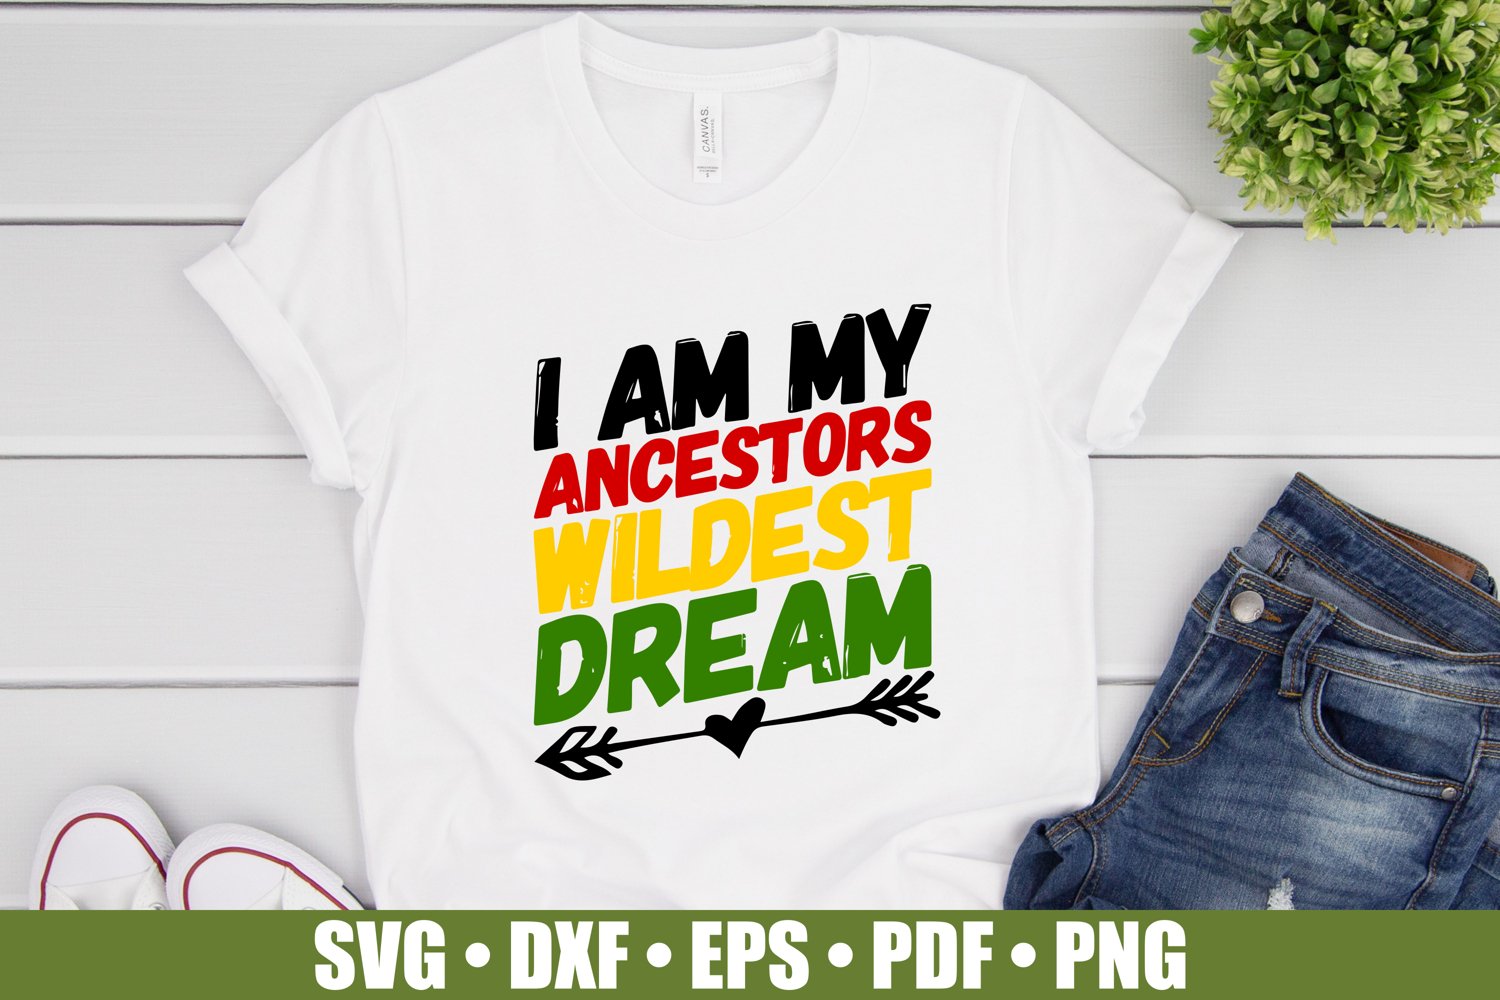 I am my ancestors wildest dream - t-shirt.